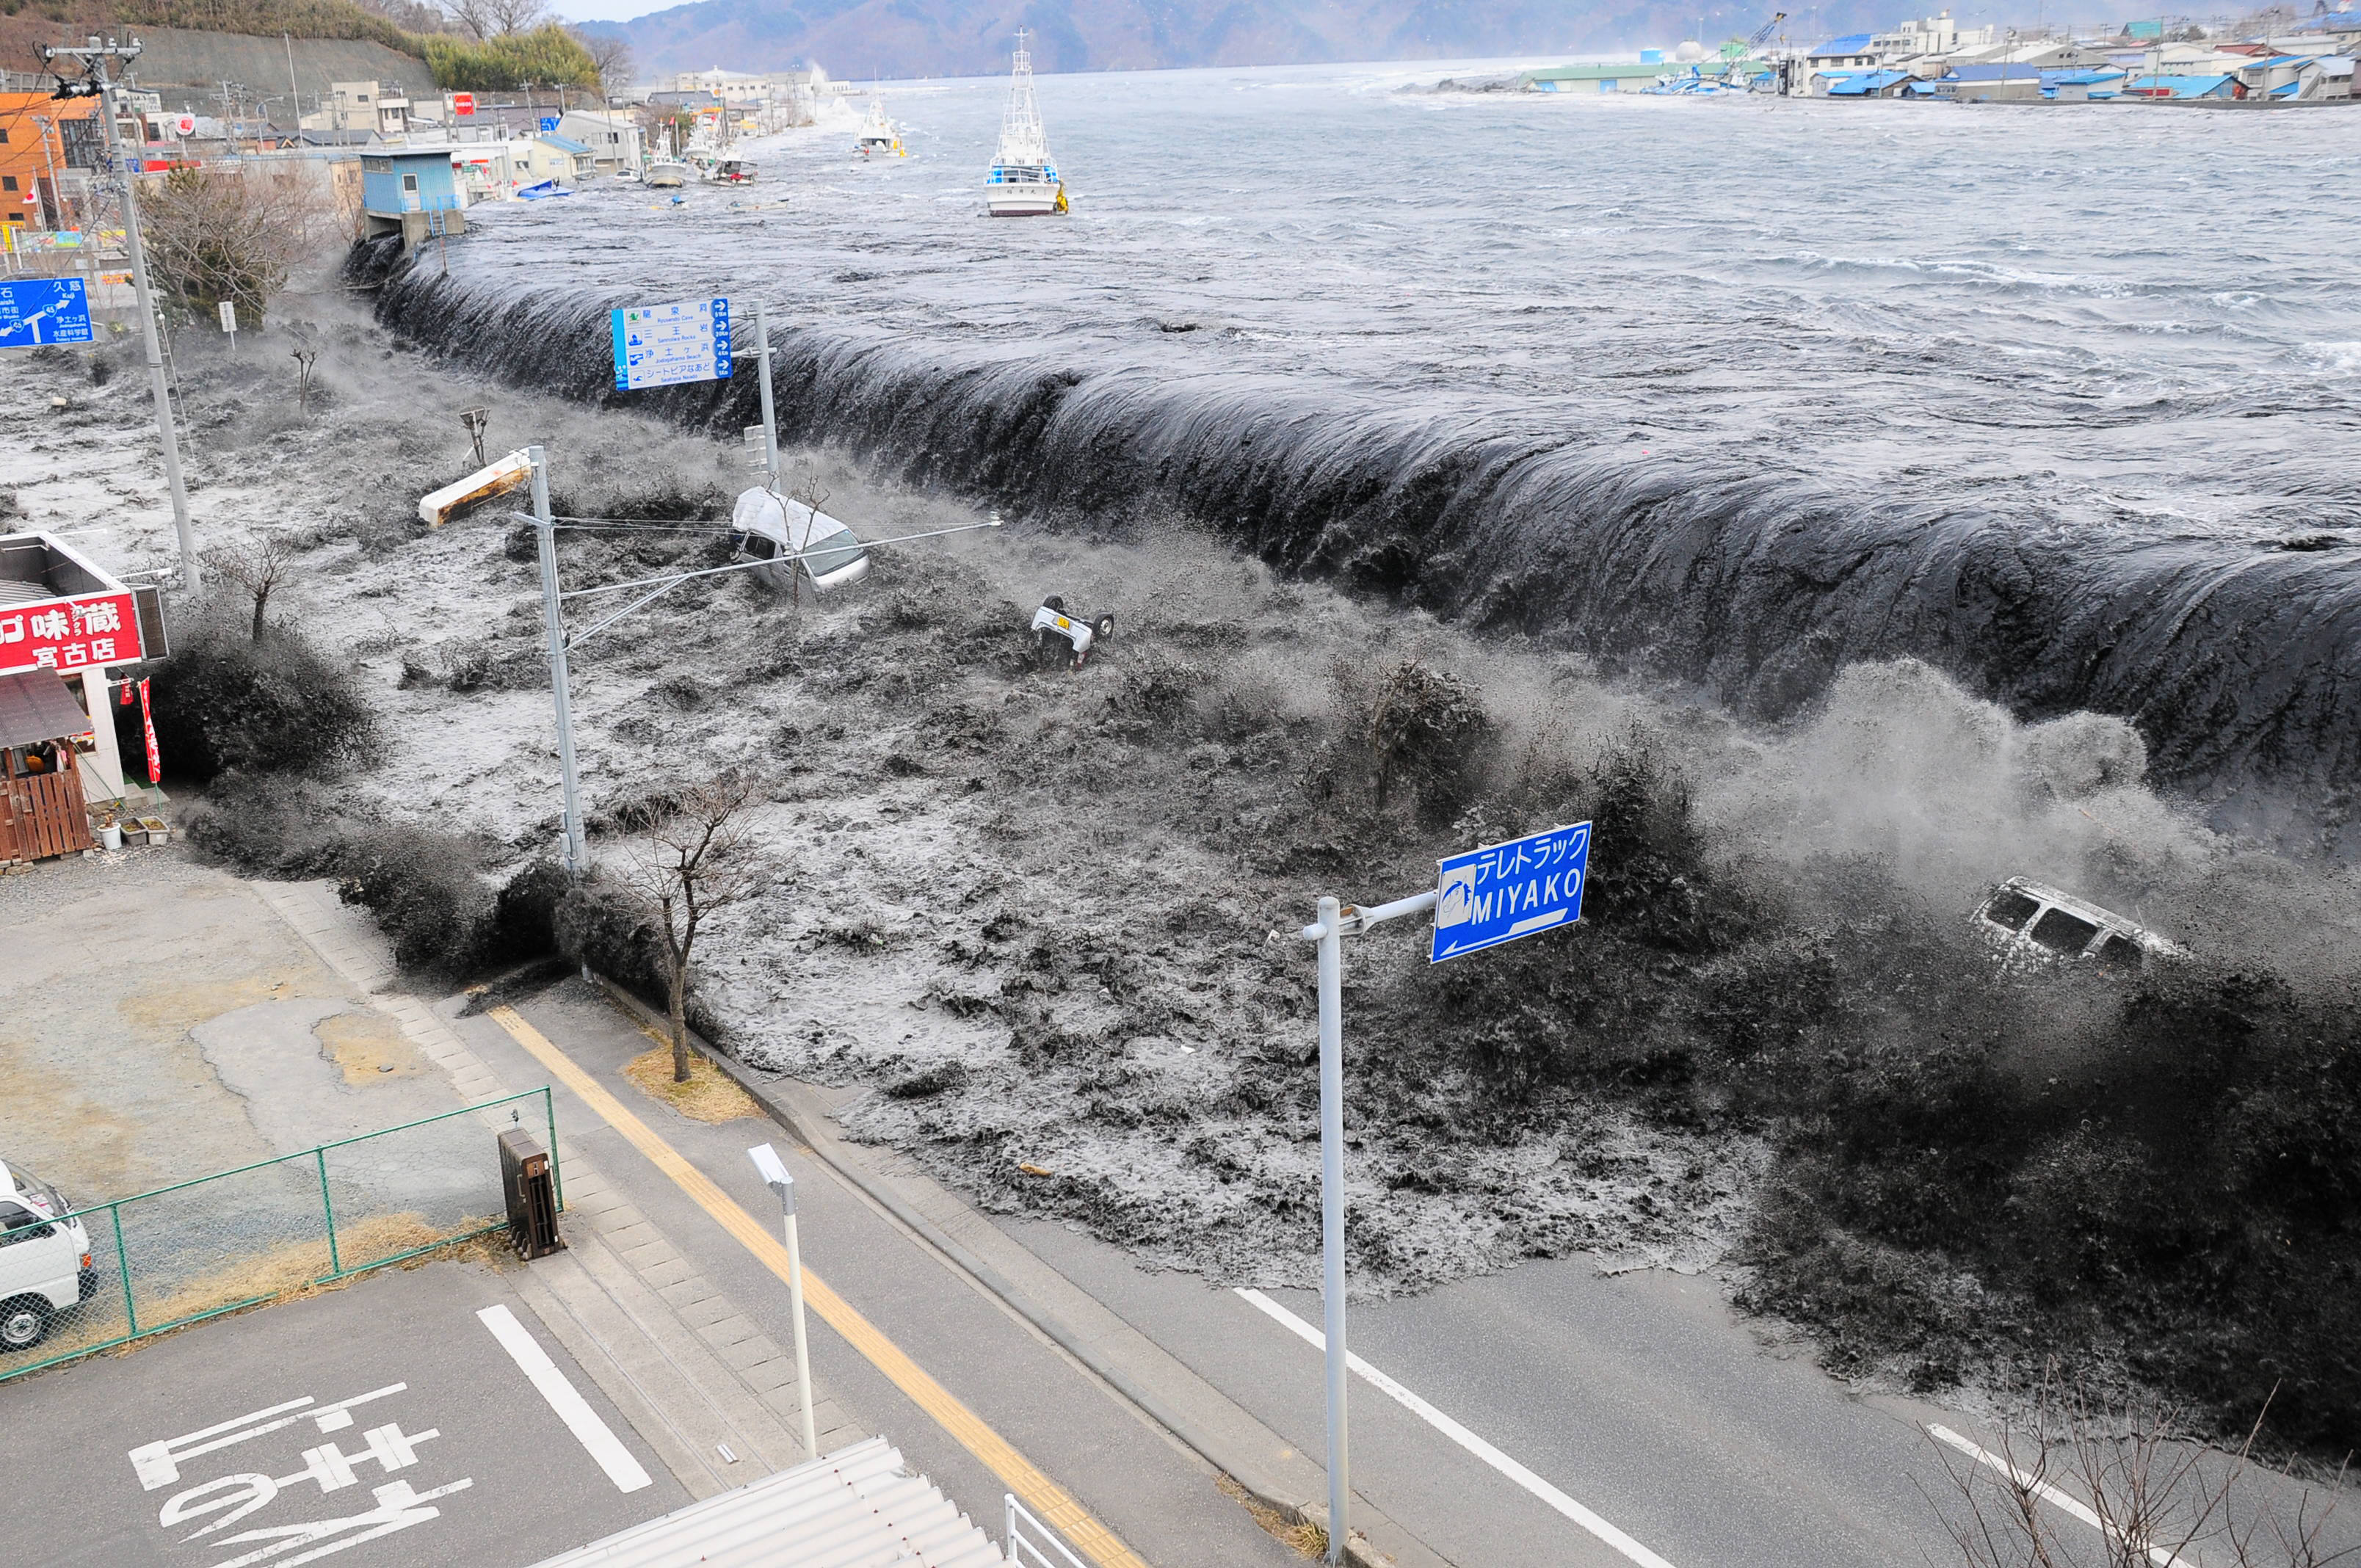 15,840 omkom till följd av tsunamin och  3,926 människor saknas fortfarande.